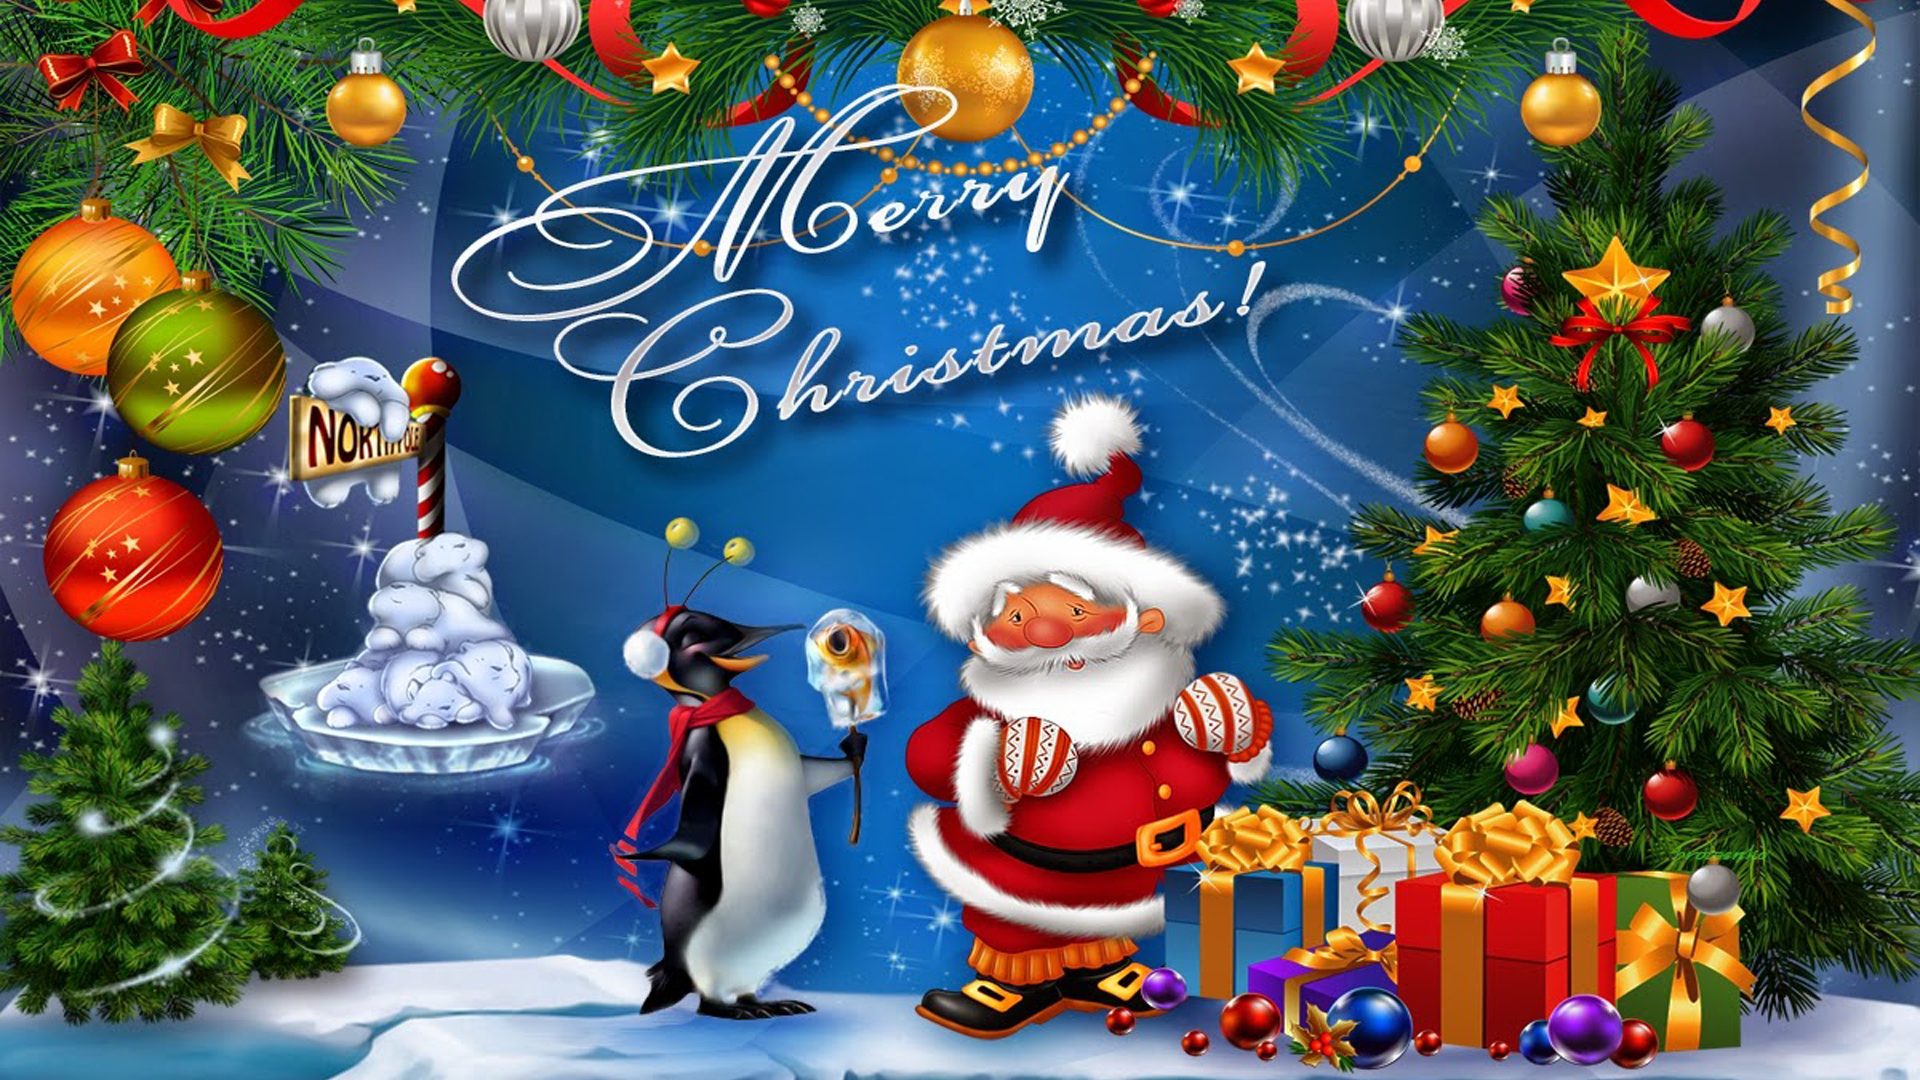 santa claus fondos de pantalla hd 1080p,navidad,árbol de navidad,nochebuena,decoración navideña,decoración navideña